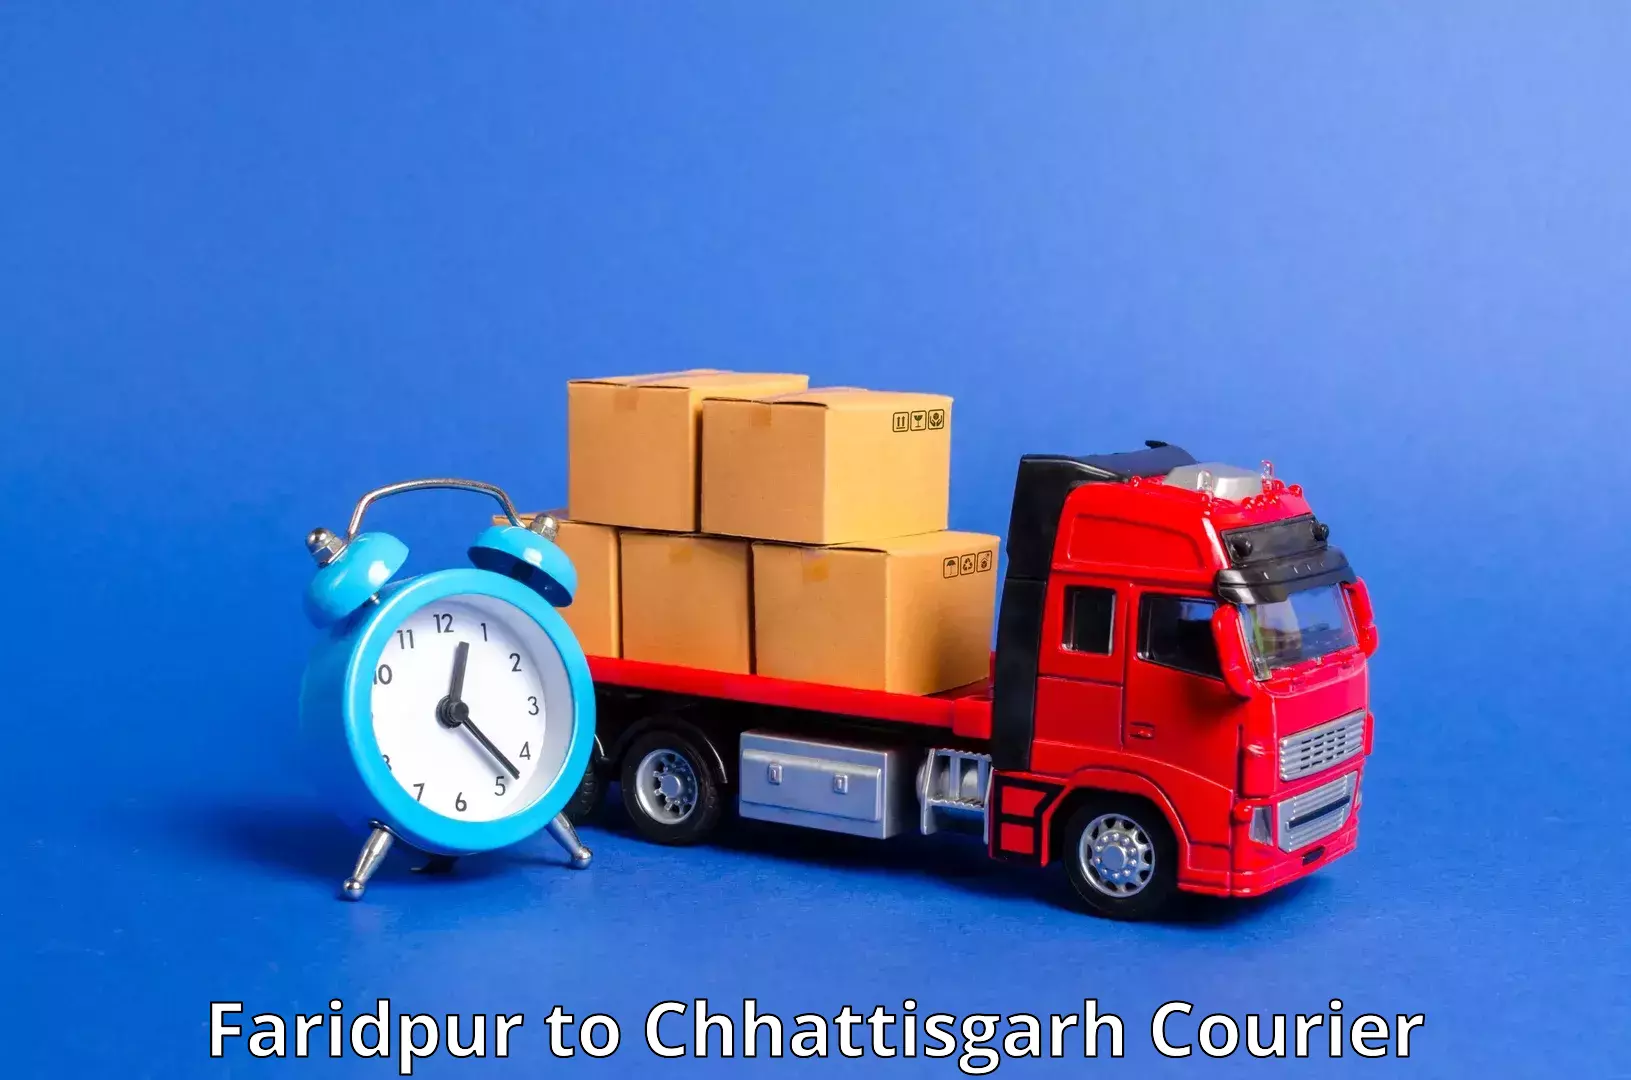 Express delivery capabilities Faridpur to Chhattisgarh